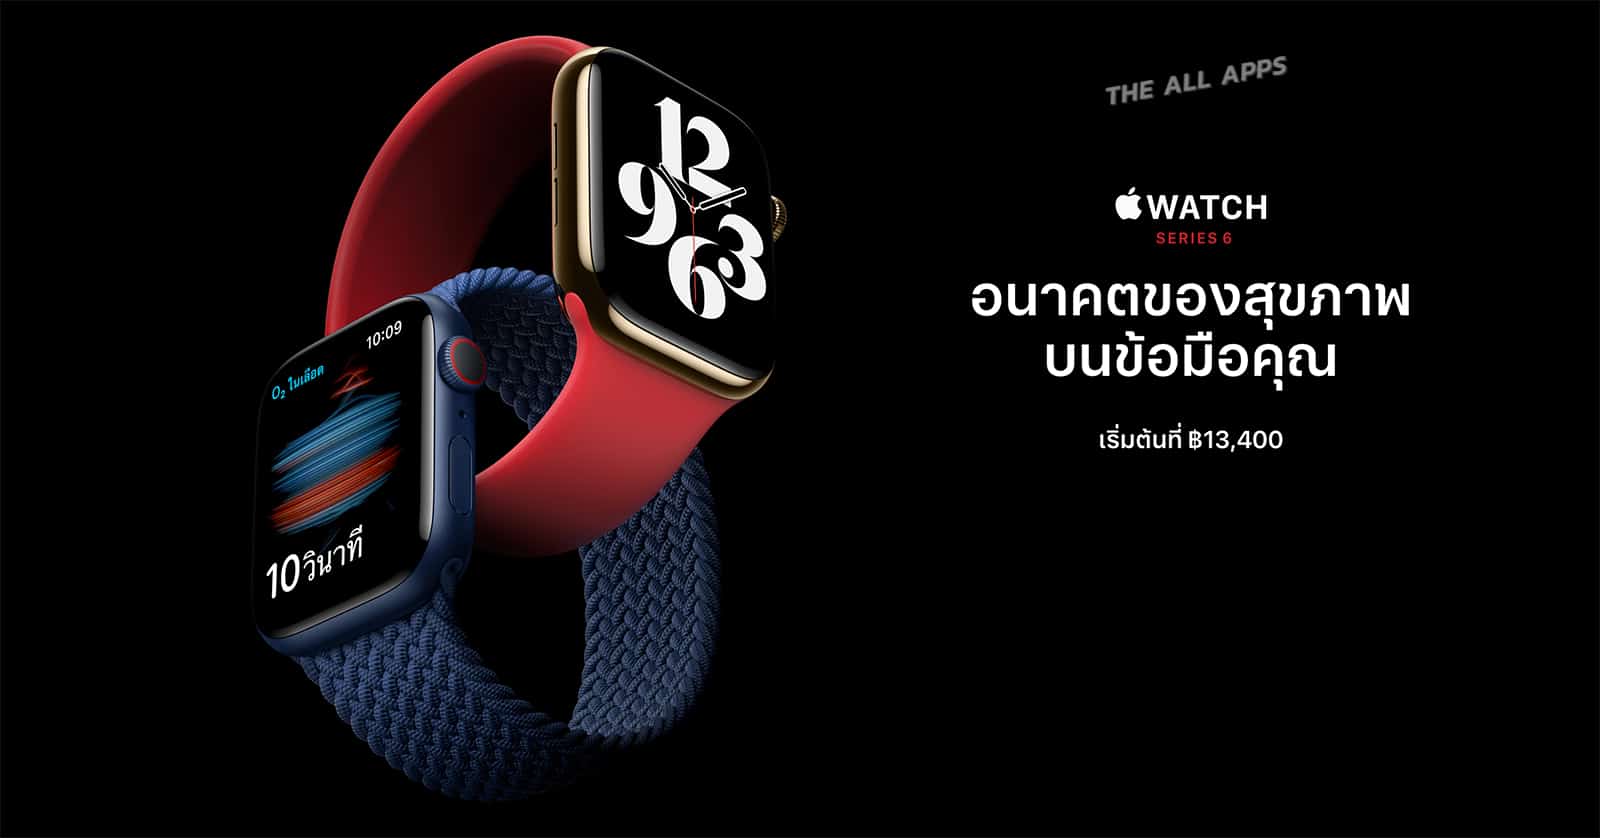 Apple Watch Series 6 มาพร้อมแอพและเซ็นเซอร์วัดออกซิเจนในเลือดตัวเรือนแบบใหม่ ราคาเริ่มต้น 13,400 บาท